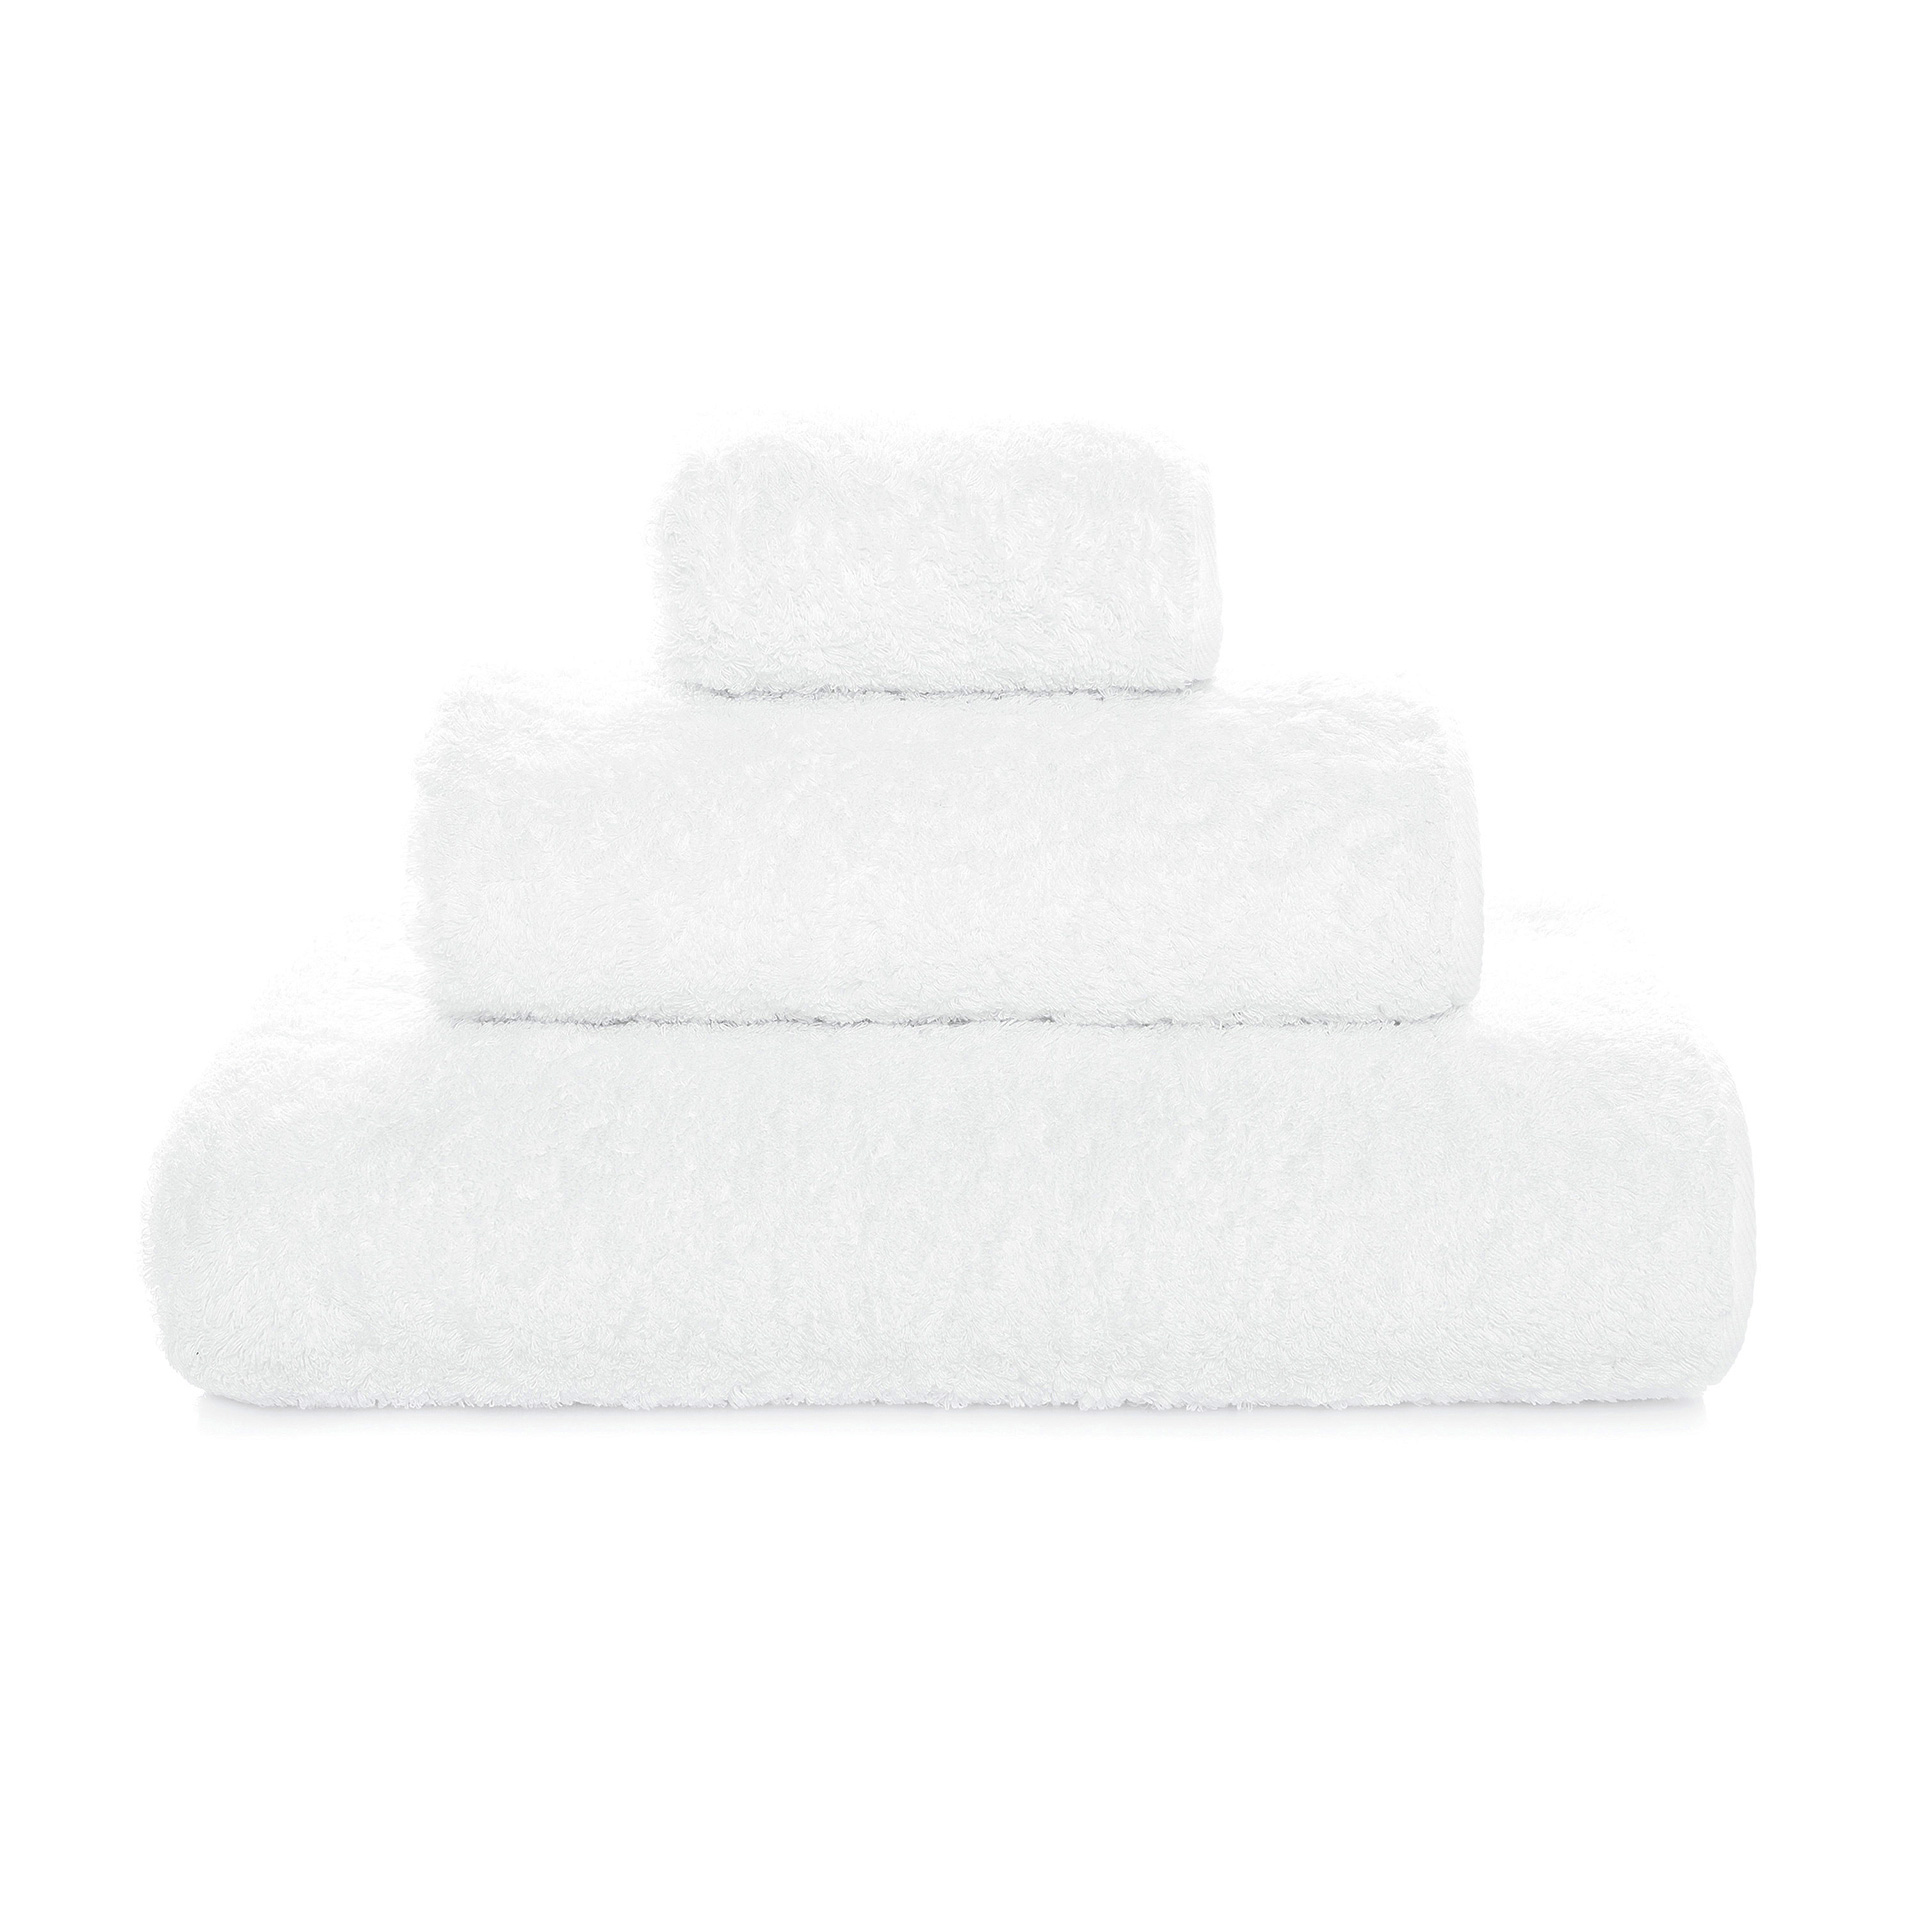 AD hotelska oprema Premium ručnik za tijelo LINIJA 1 - 70 x 140 cm (2 komada) slika proizvoda